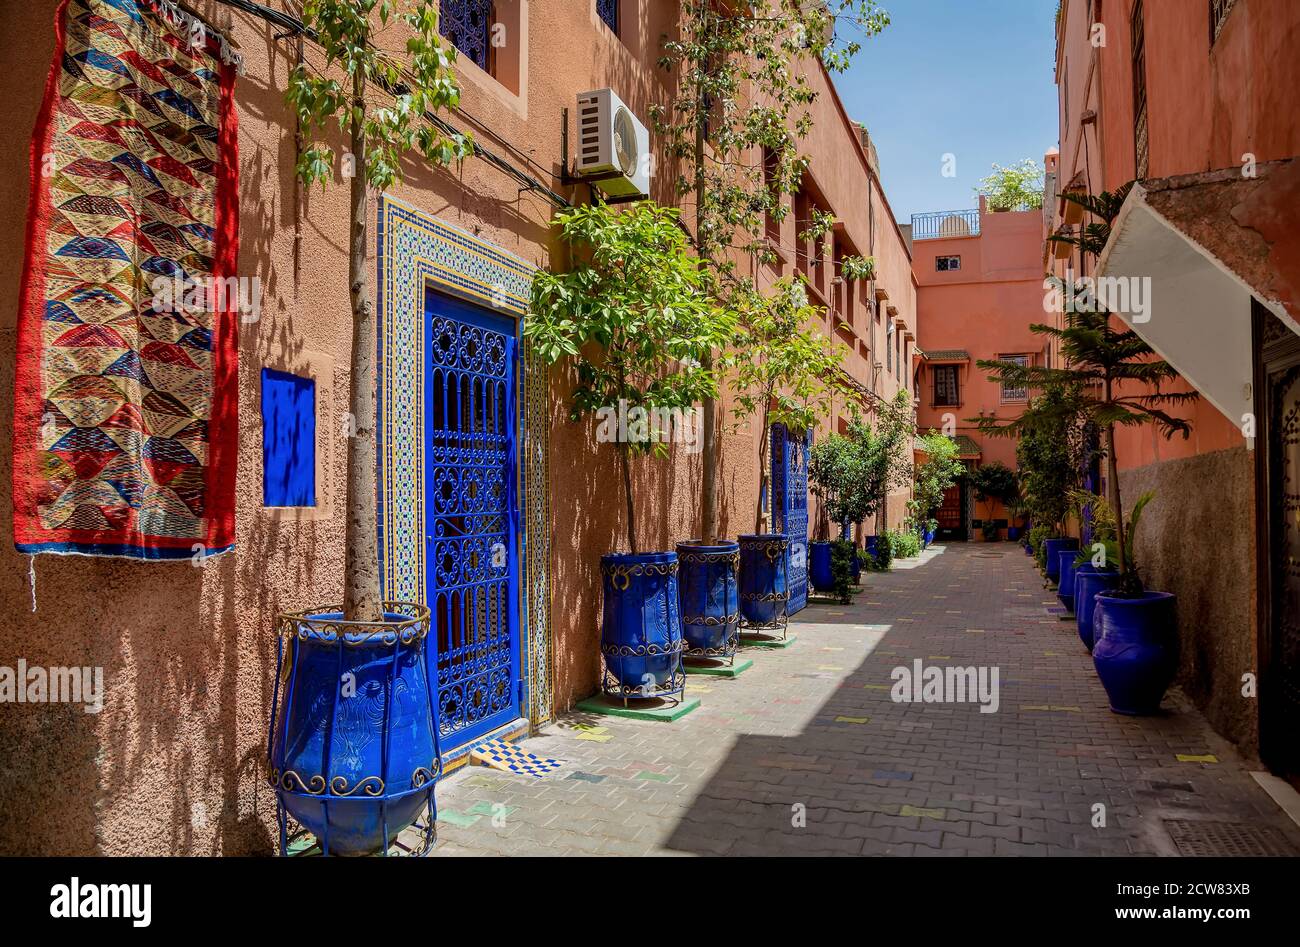 Tipica strada stretta di Marrakech con tappeti, vasi di fiori in ceramica blu brillante, porte dipinte blu, pareti dipinte di bianco rosso. Foto Stock